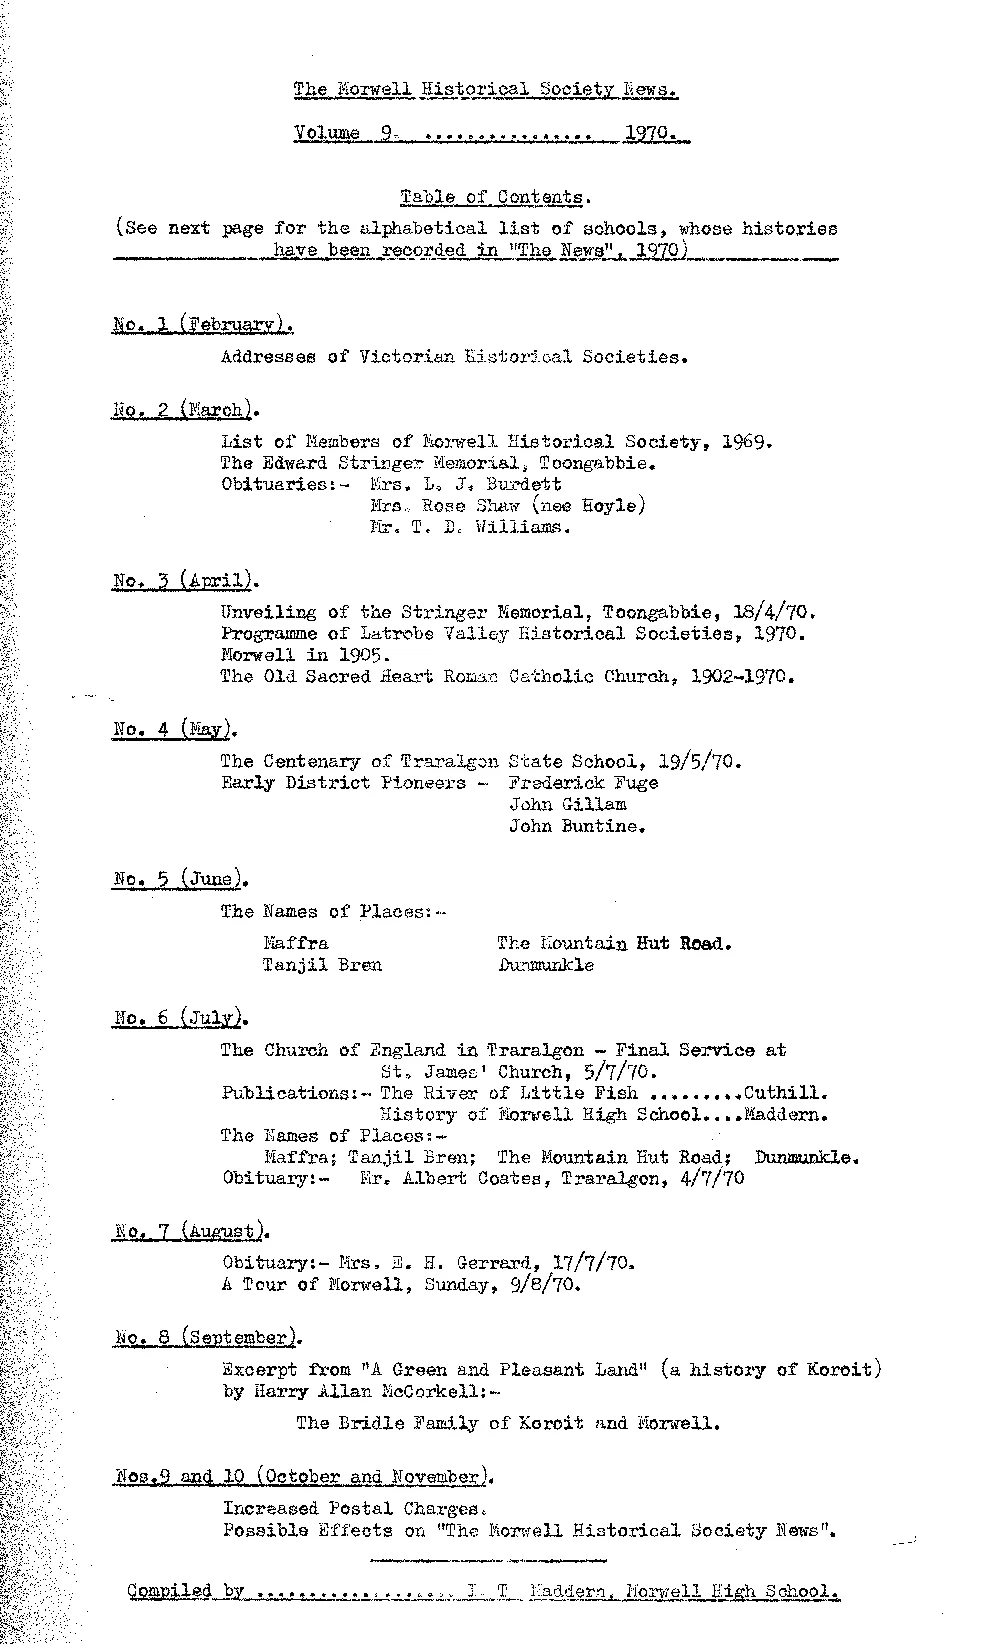 Newsletter Volume 9 1970